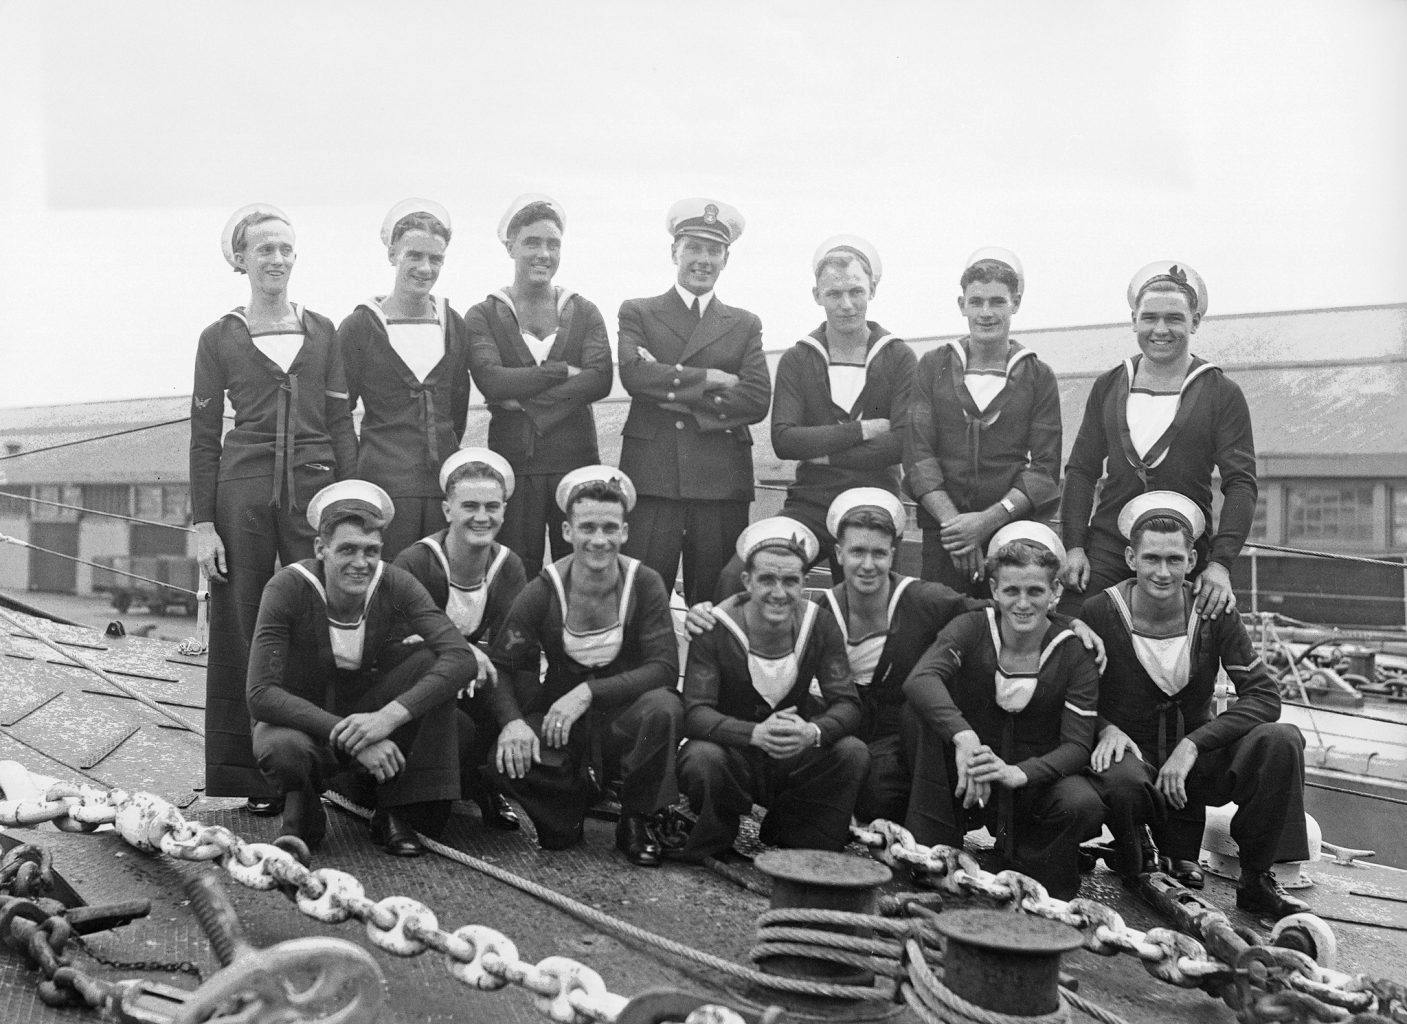 Forgotten Perth Vintage Fremantle sailors on a ship deck, Fremantle Wharf April 1943